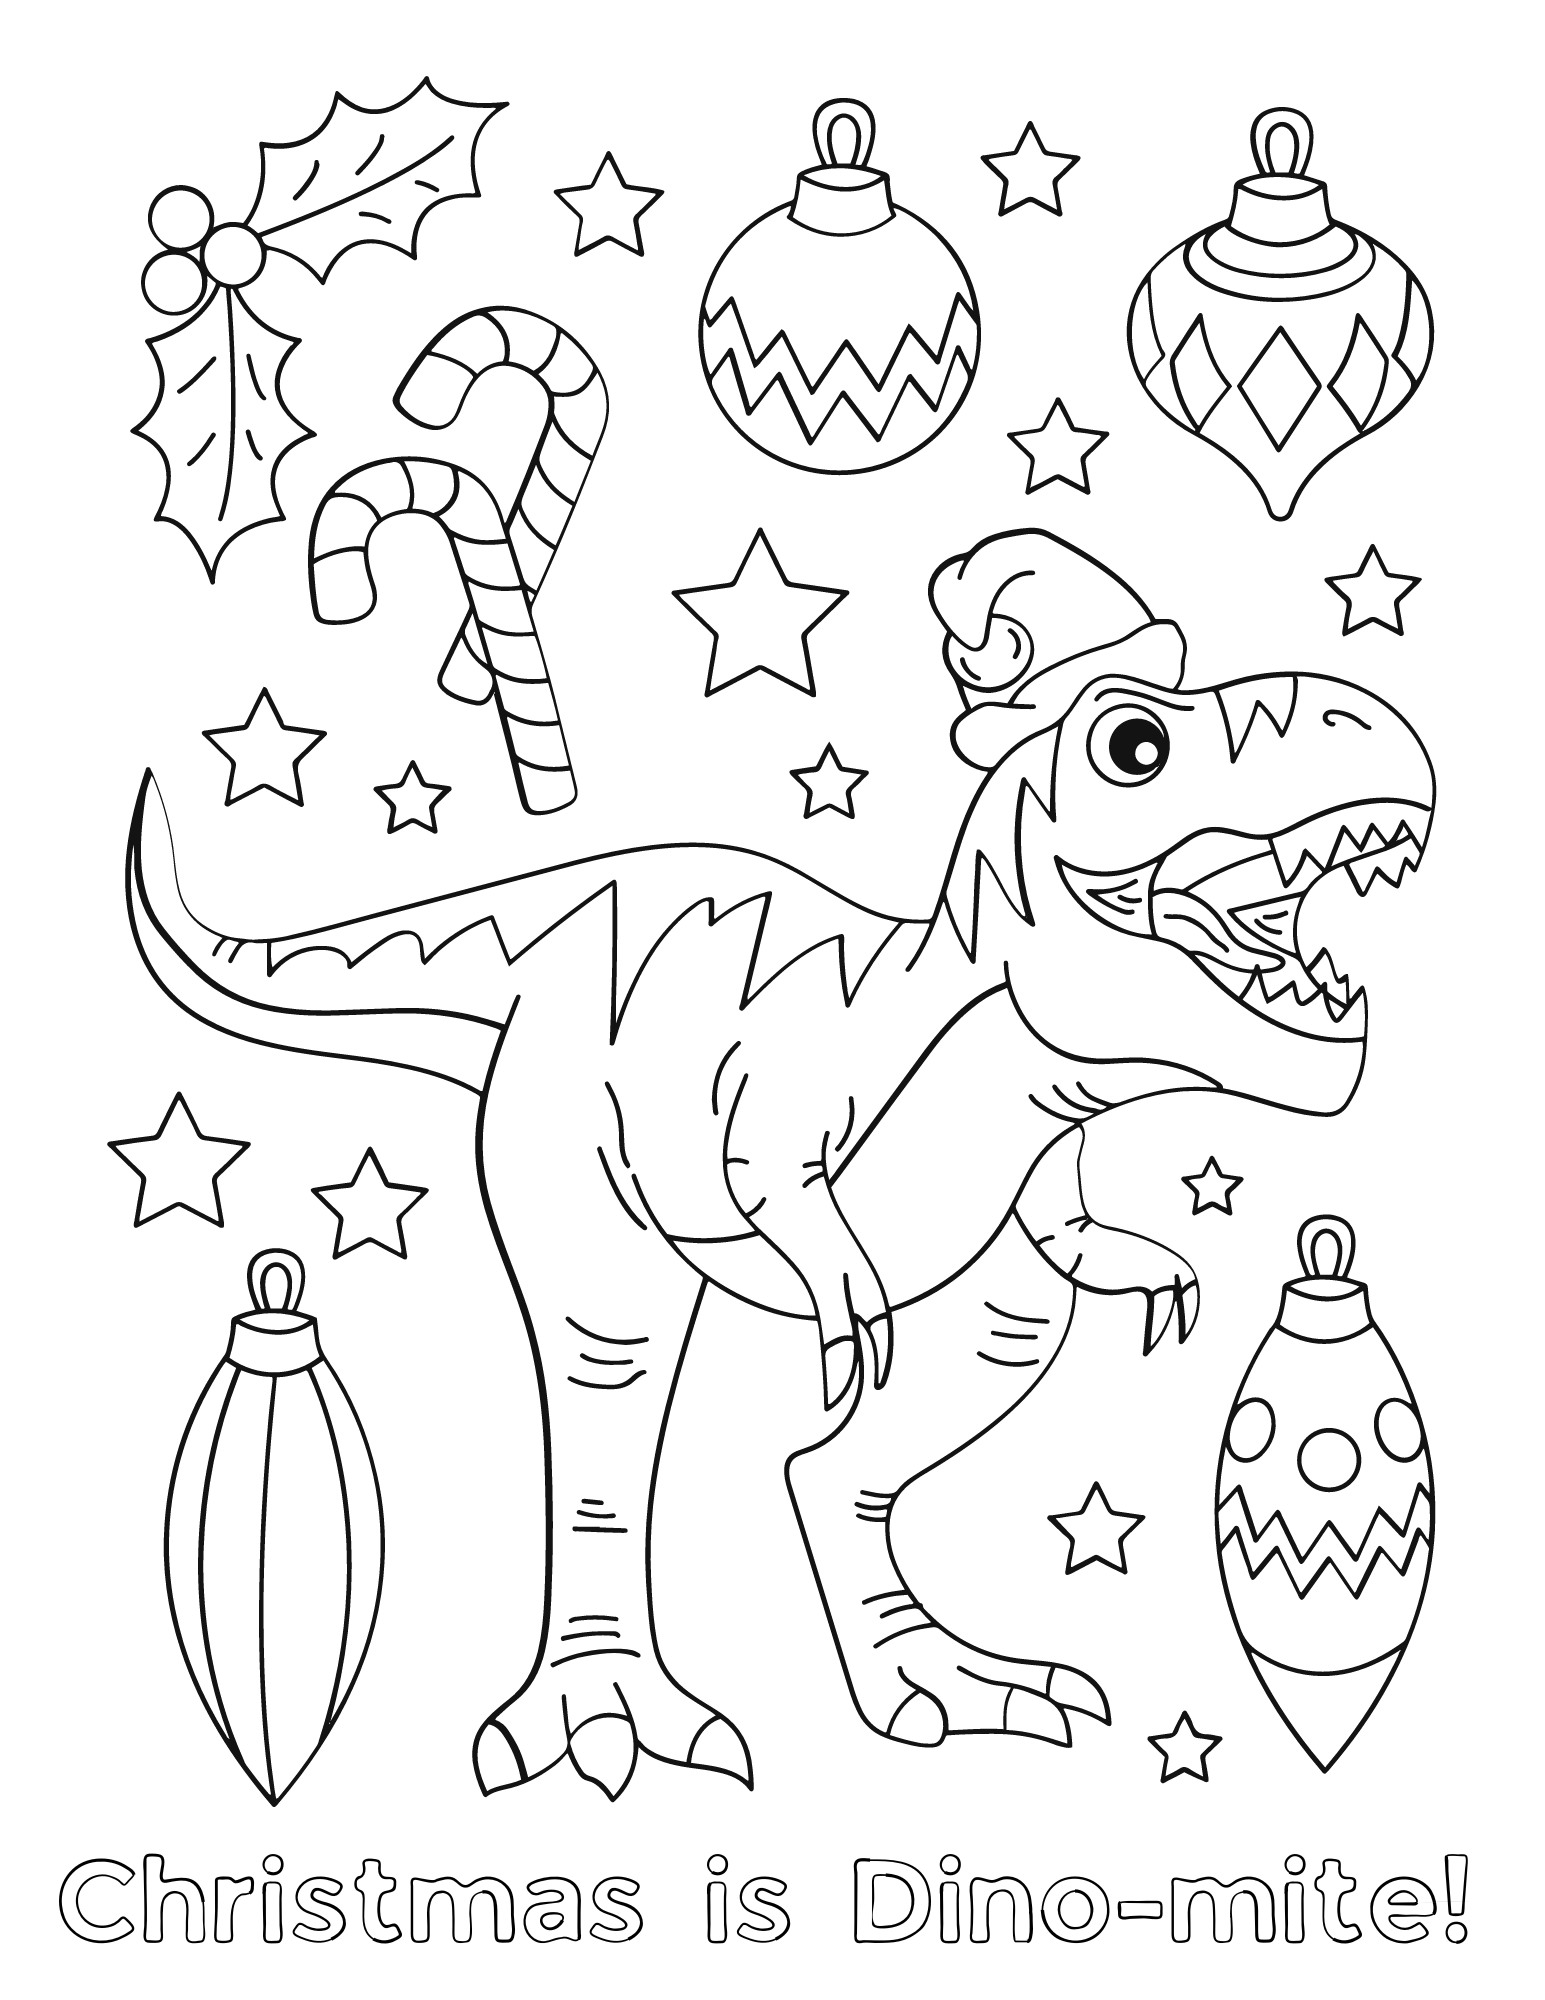 Dino-mite Dinosaur Christmas Coloring ...